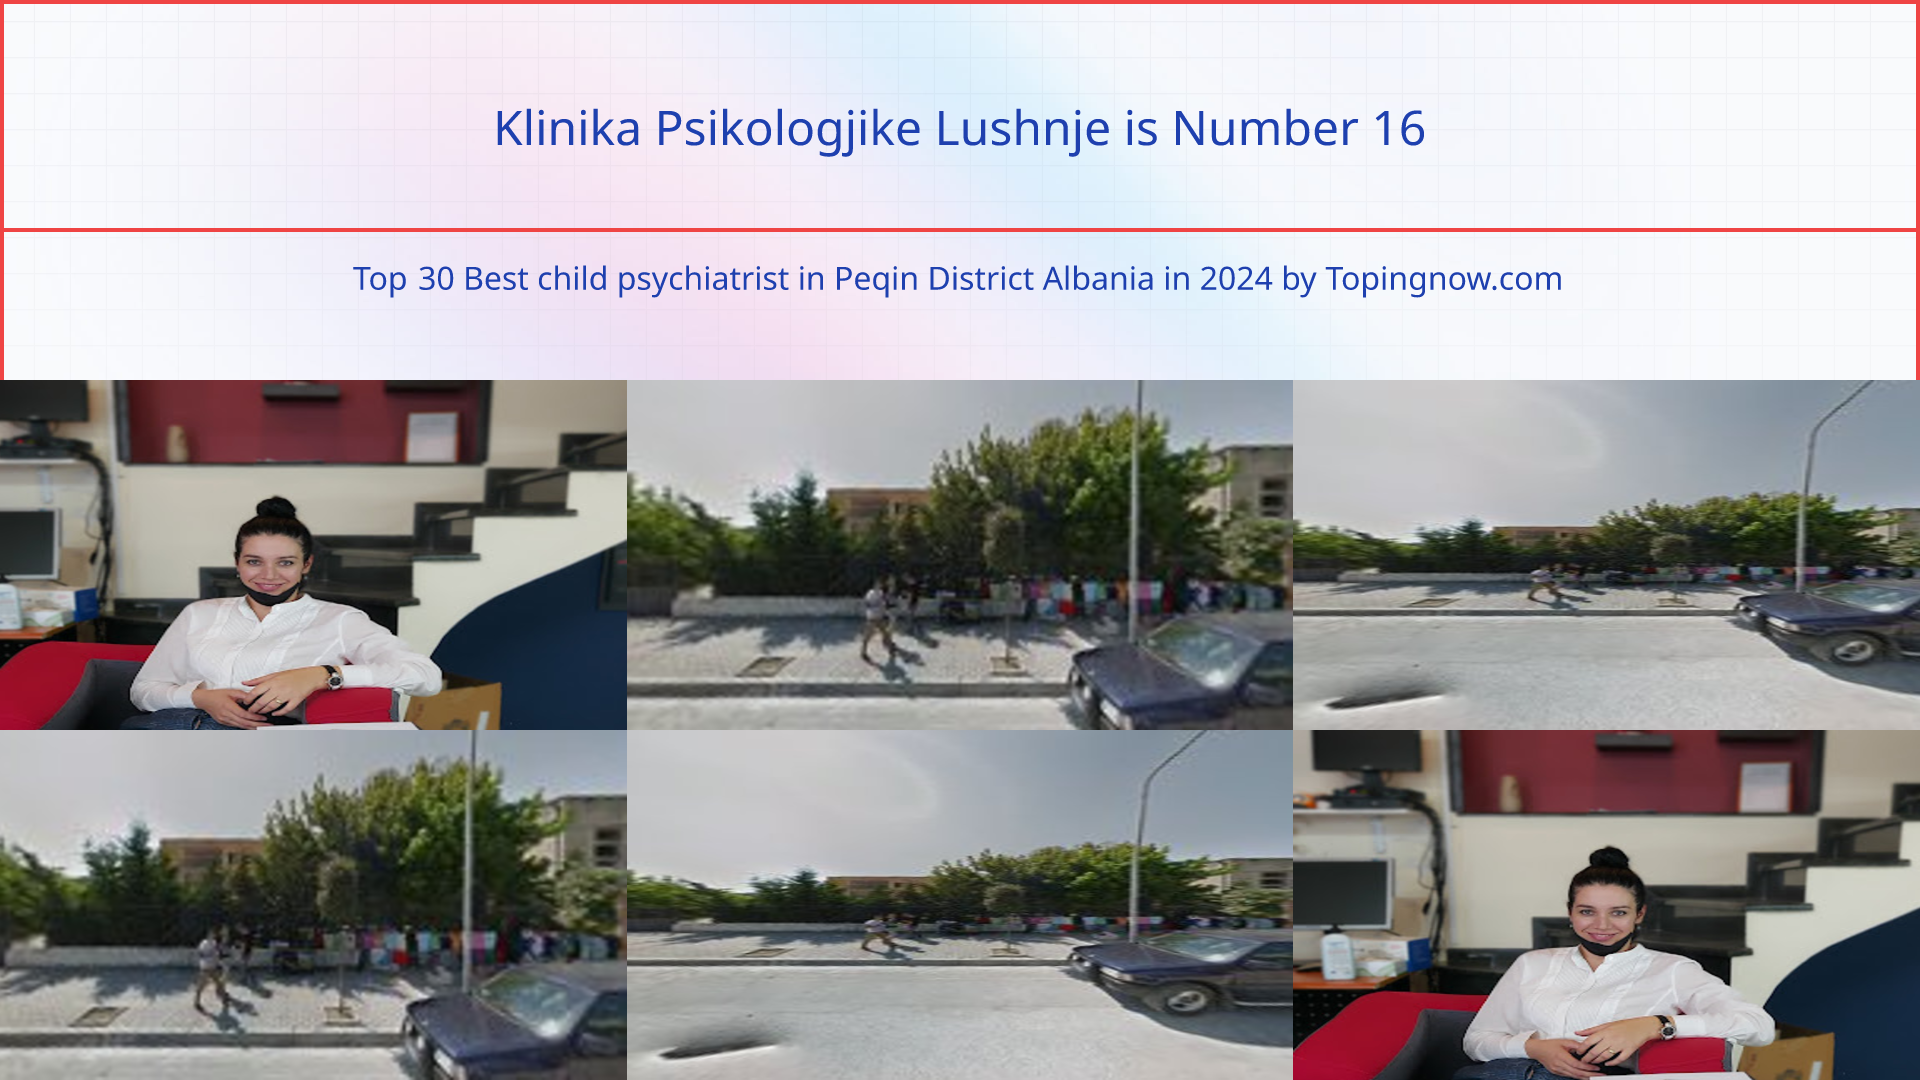 Klinika Psikologjike Lushnje: Top 30 Best child psychiatrist in Peqin District Albania in 2024